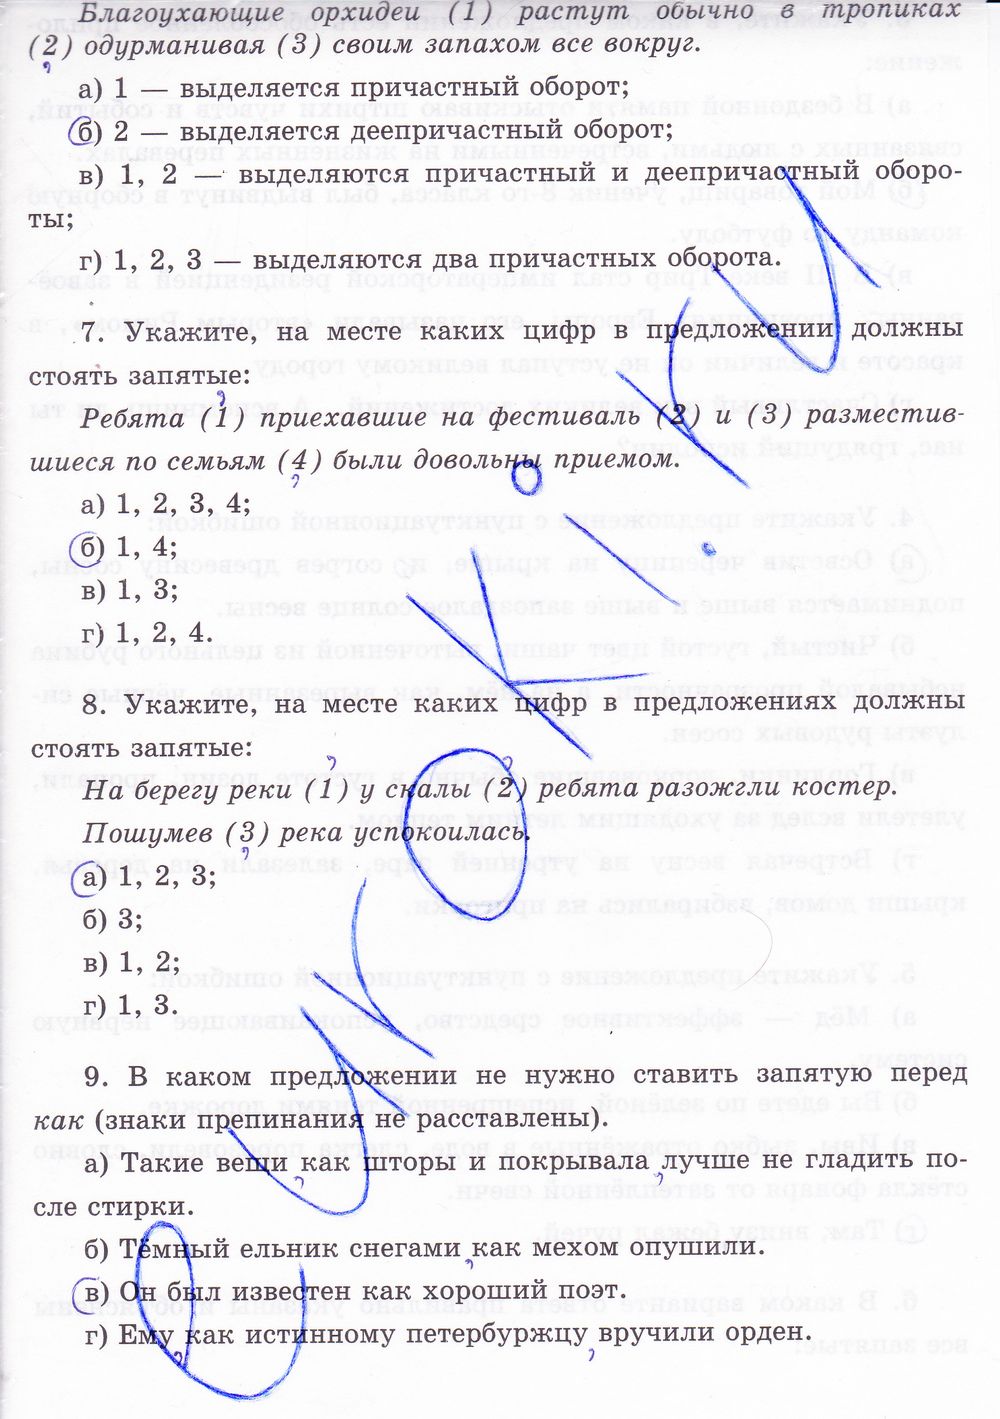 ГДЗ Русский язык 8 класс - стр. 86